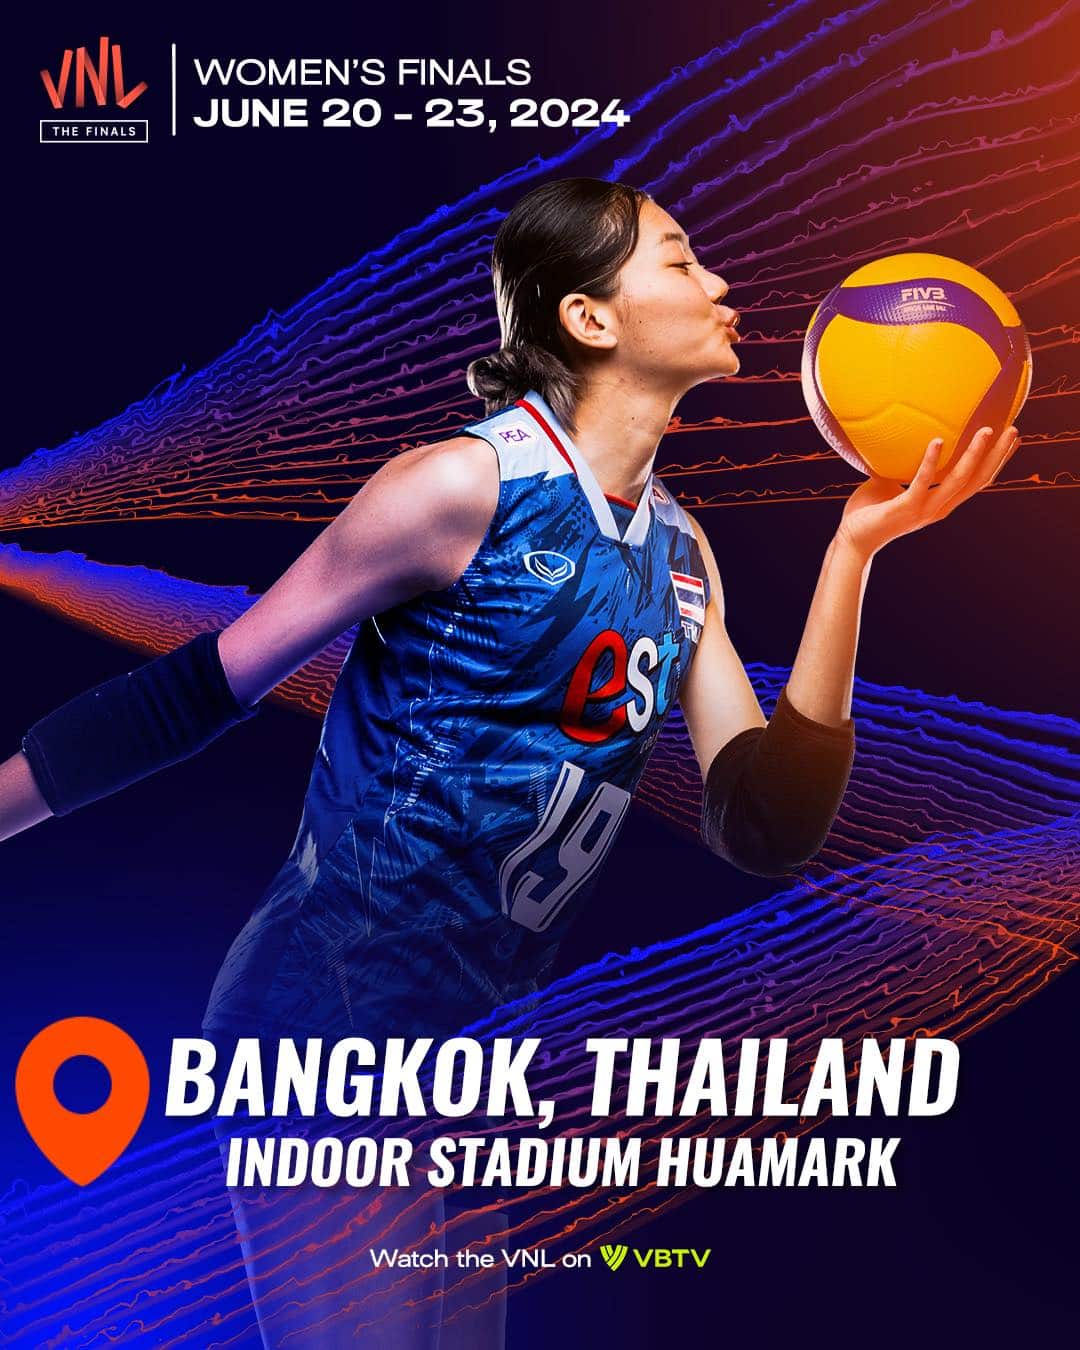 FIVB โพสต์ภาพ "ชัชอุอร" ยืนยันไทยเป็นเจ้าภาพ VNL 2024 รอบสุดท้าย